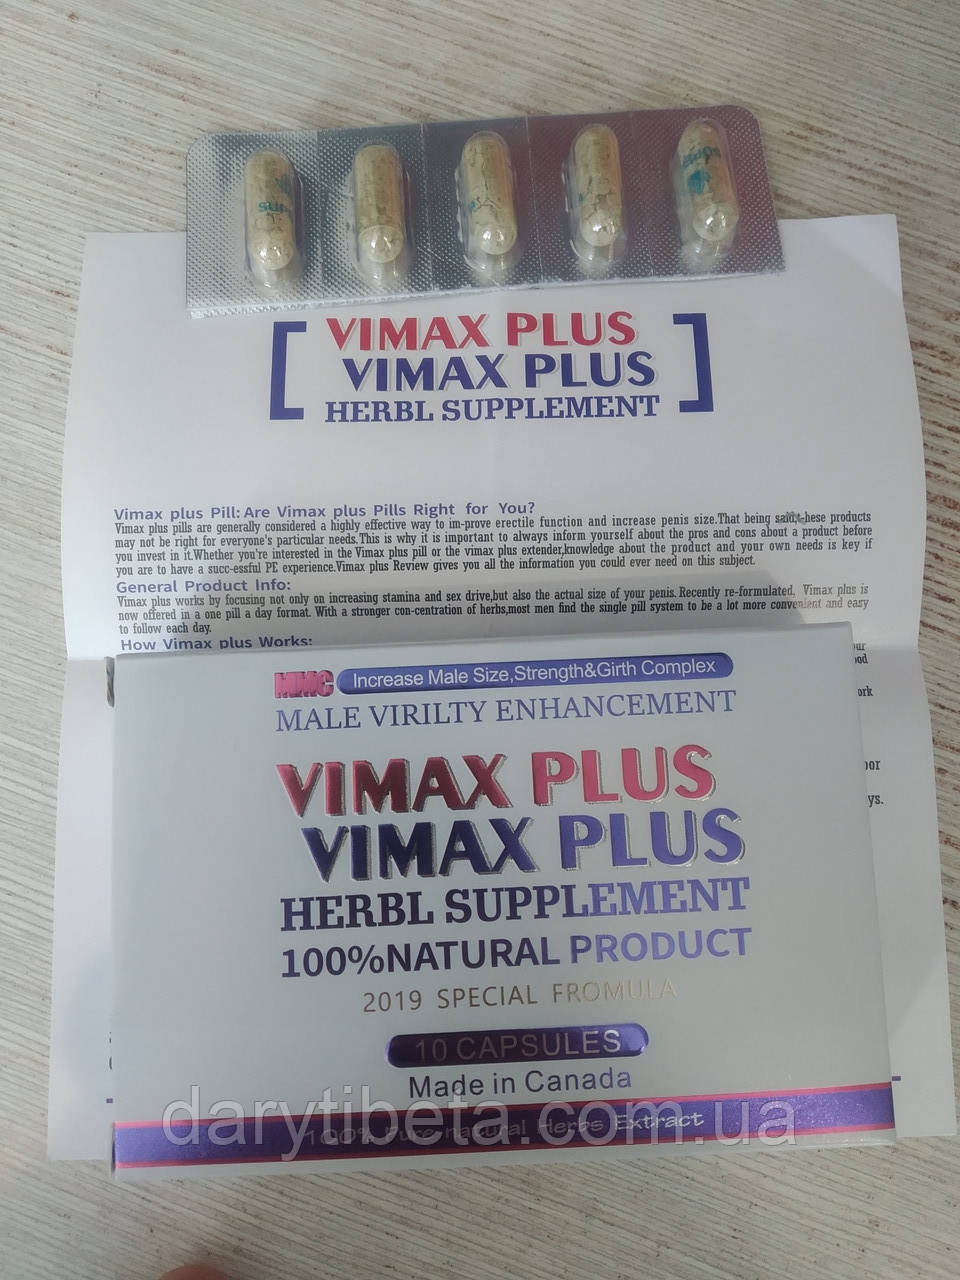 ПРОБНИК! Капсули для потенції VIMAX PLUS (Вімакс плюс) collА, 5 капс*600 мг, ПРОВЕРЕН ЛІЧНО 100%